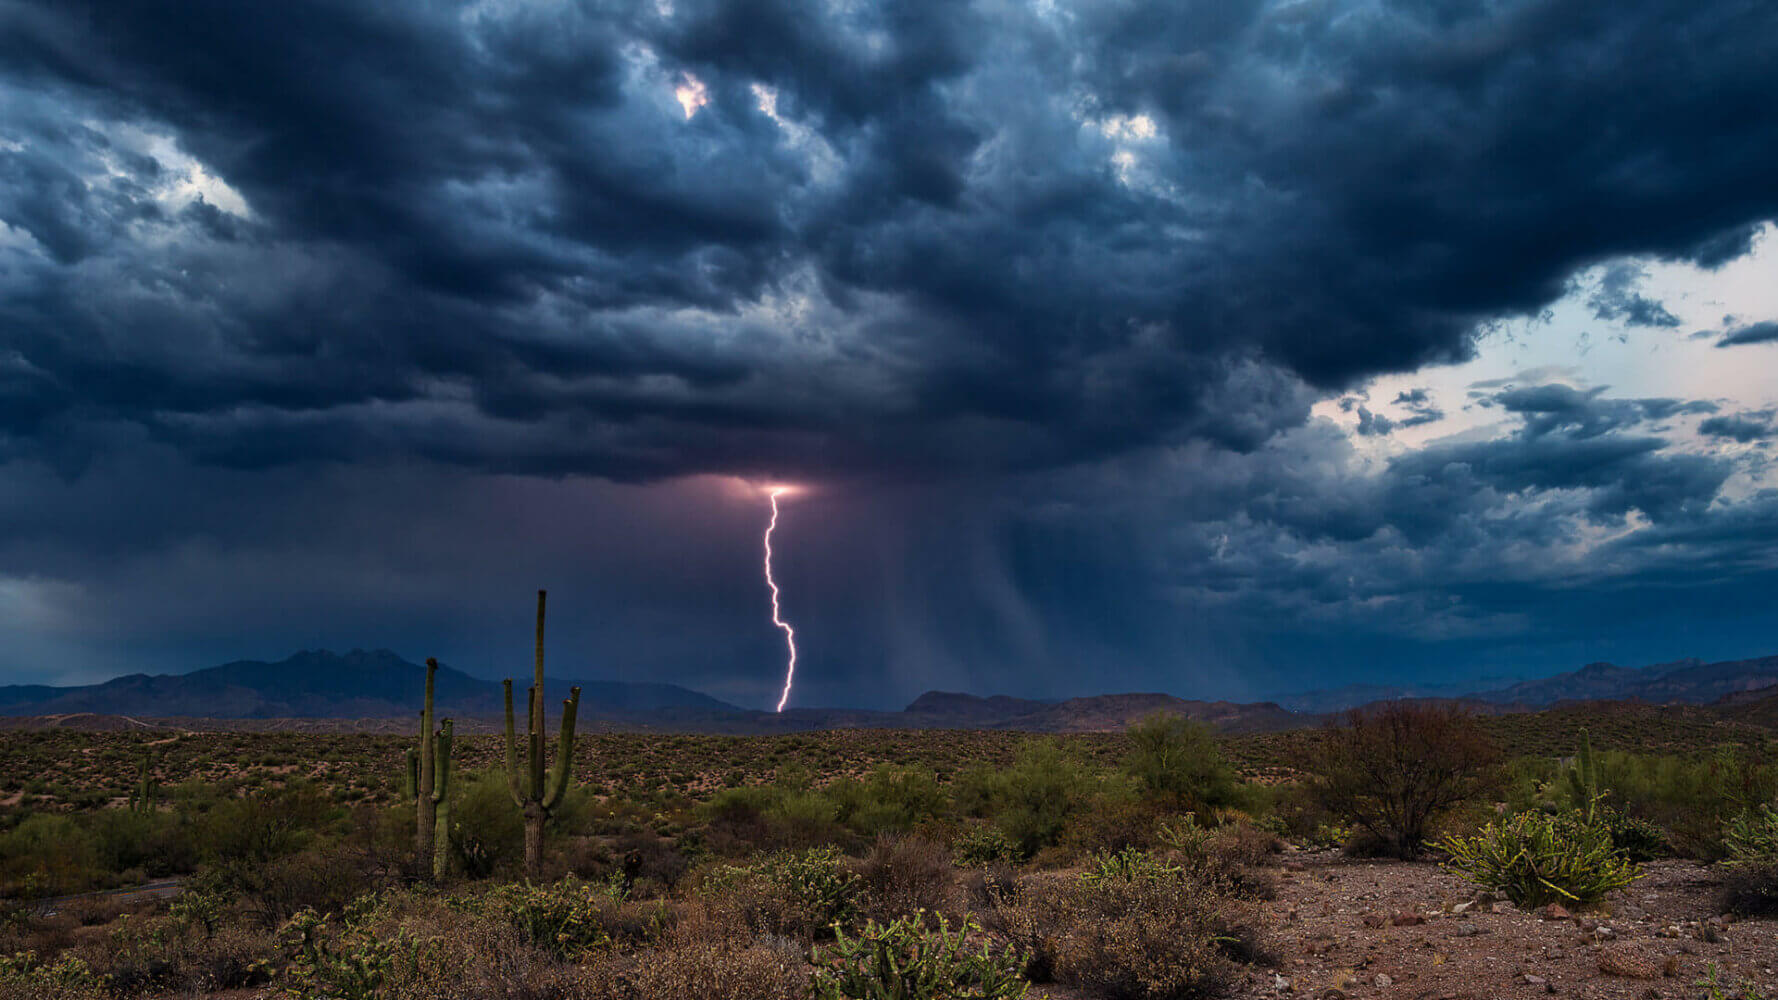 Lightning strikes in the desert, stock market dog days